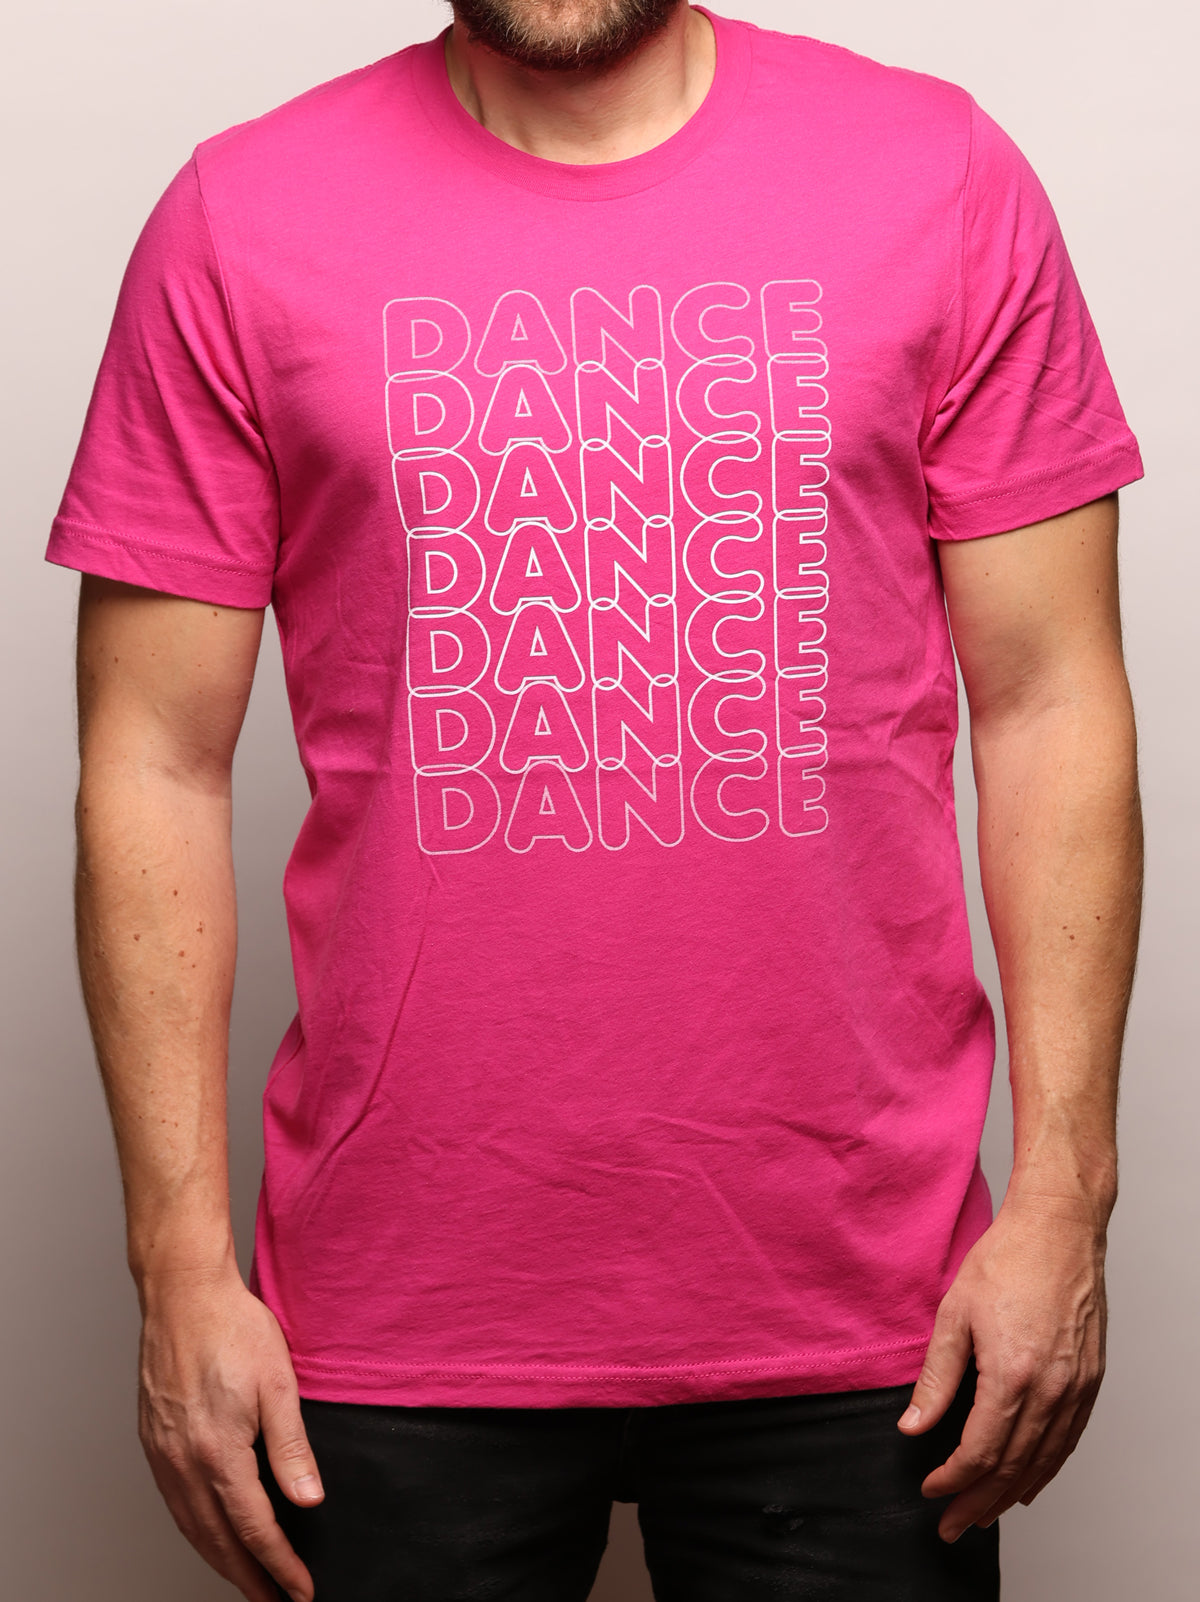 Dance Dance Dance Shirt - Adult